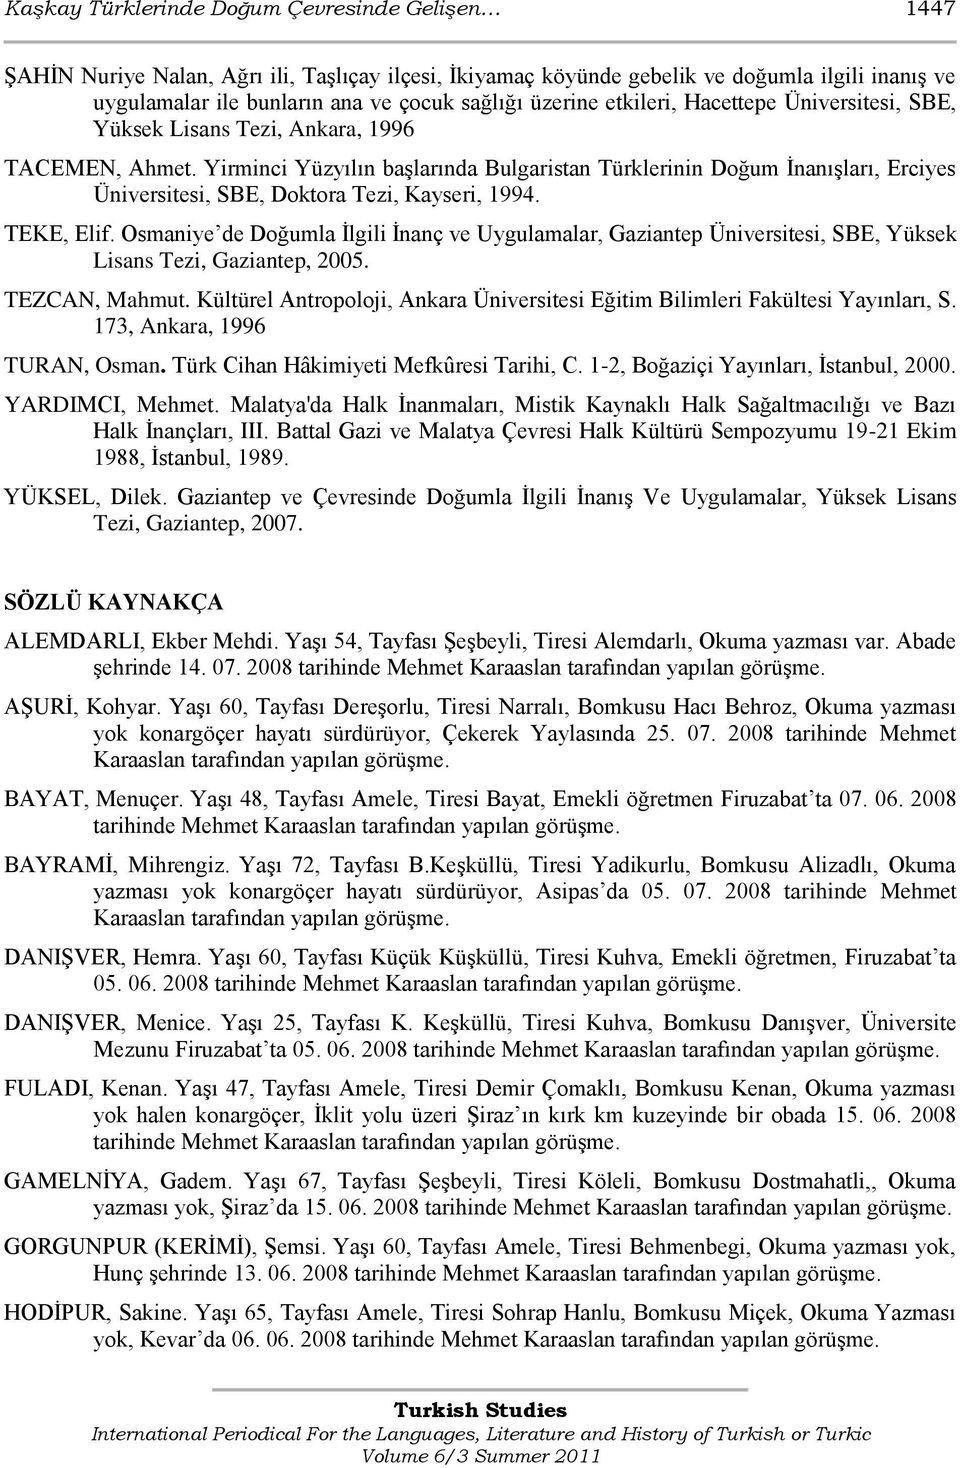 Yirminci Yüzyılın baģlarında Bulgaristan Türklerinin Doğum ĠnanıĢları, Erciyes Üniversitesi, SBE, Doktora Tezi, Kayseri, 1994. TEKE, Elif.